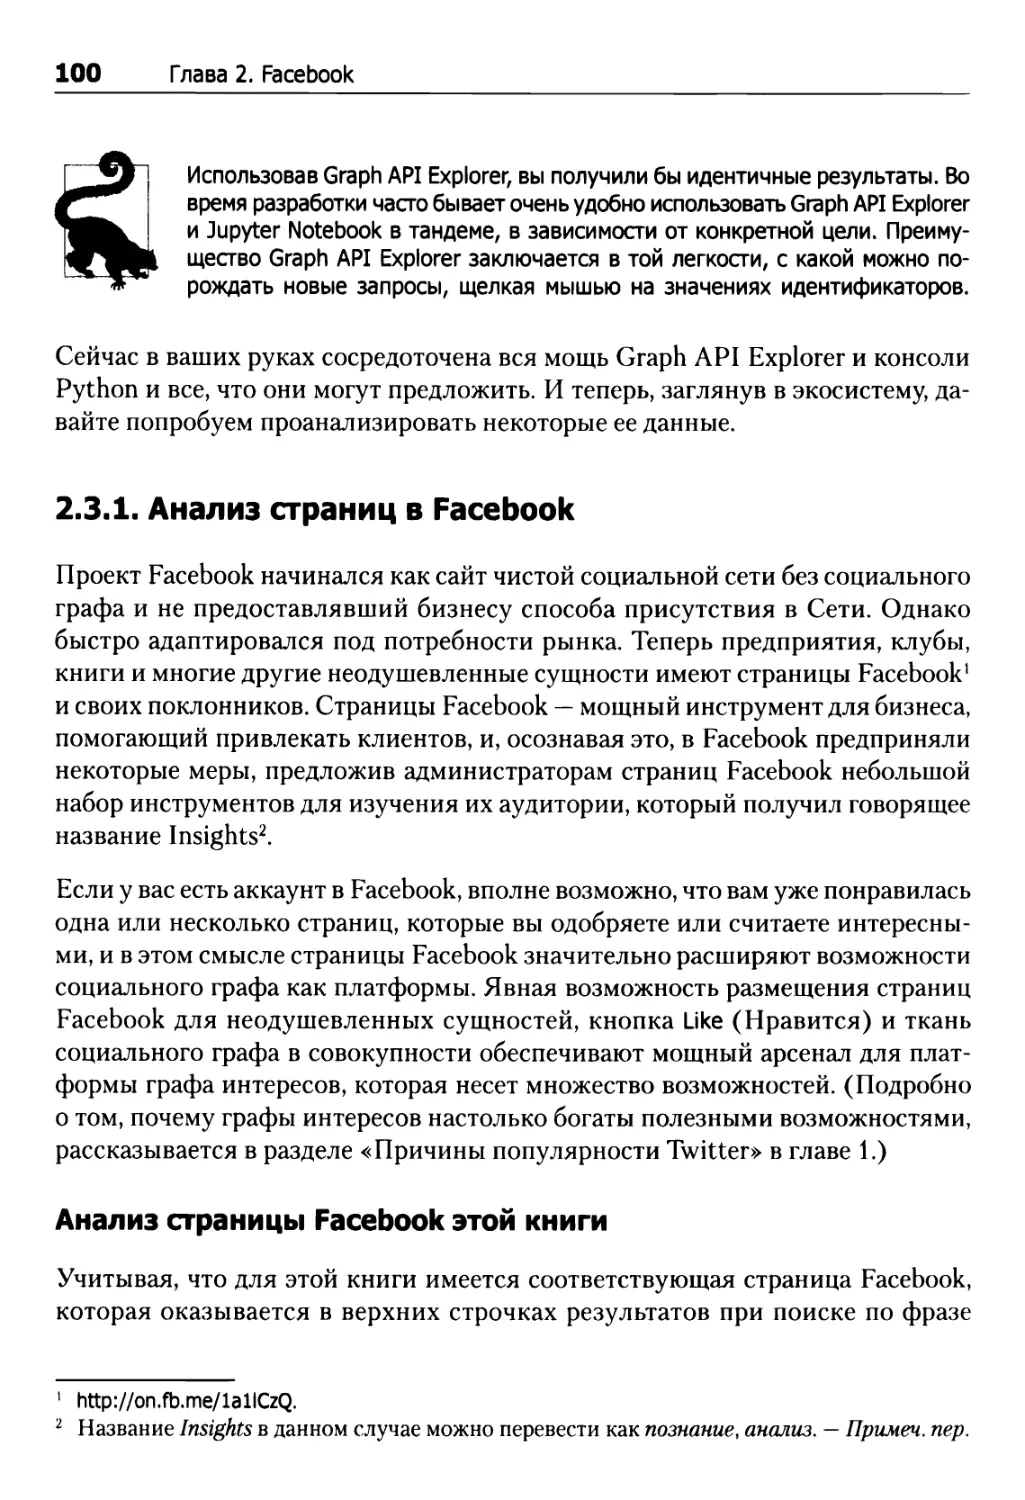 2.3.1. Анализ страниц в Facebook